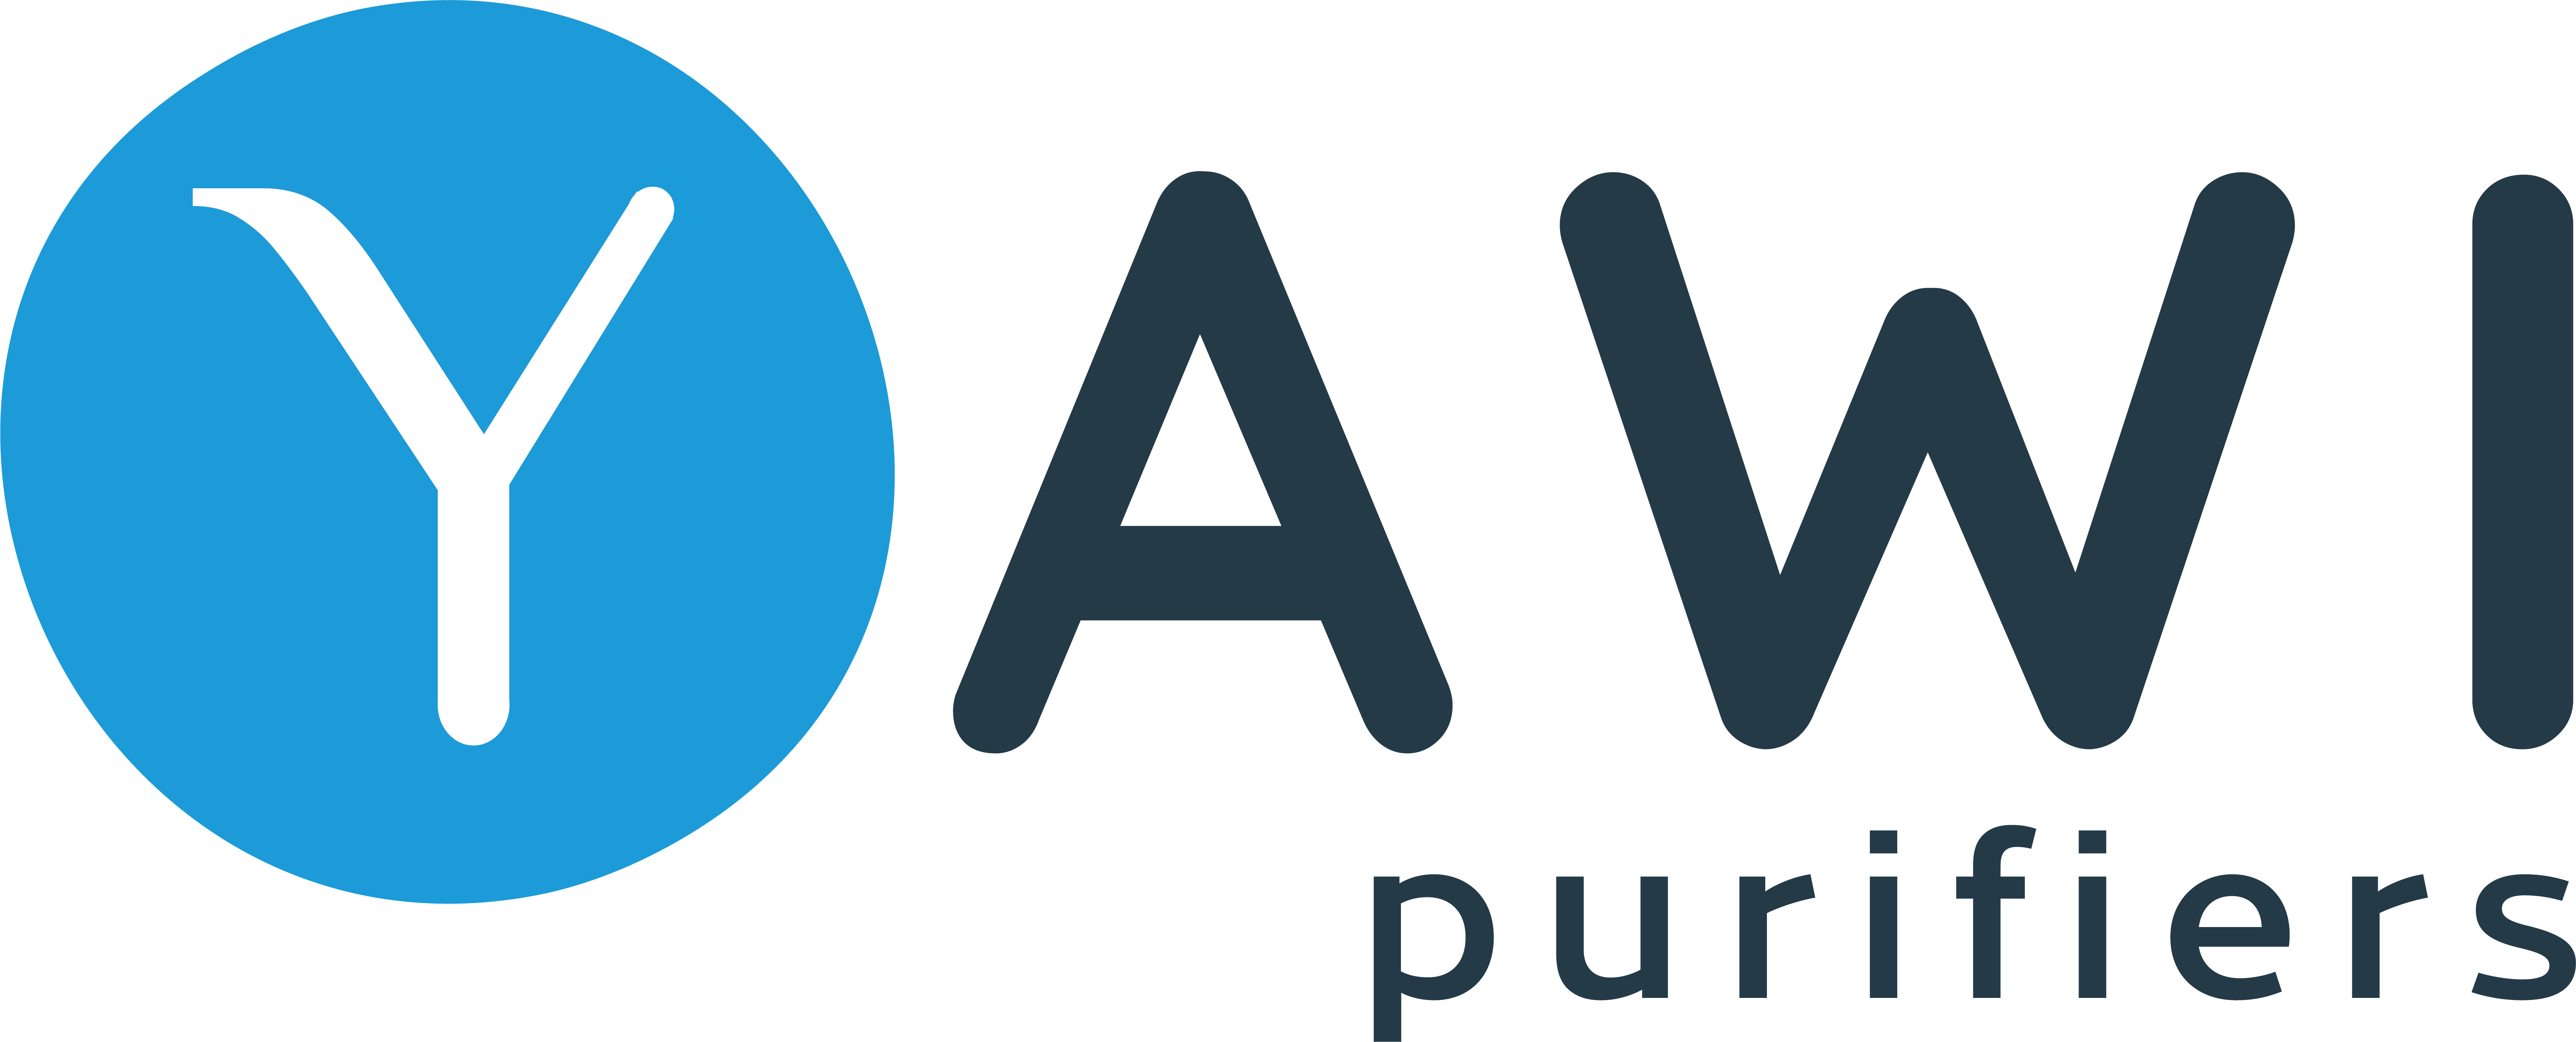 Logo YAWI